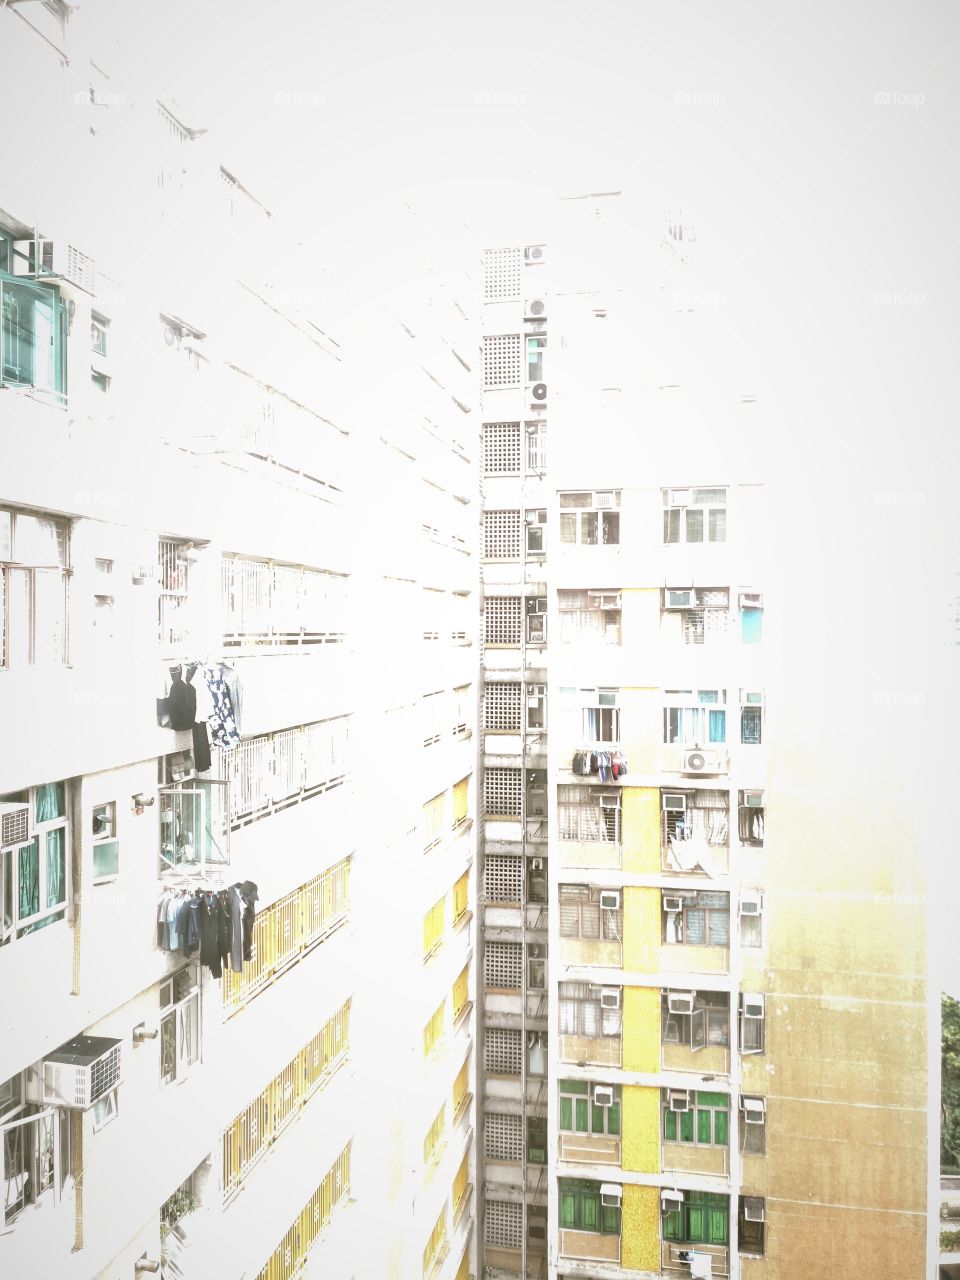 Public Housing in Hong Kong